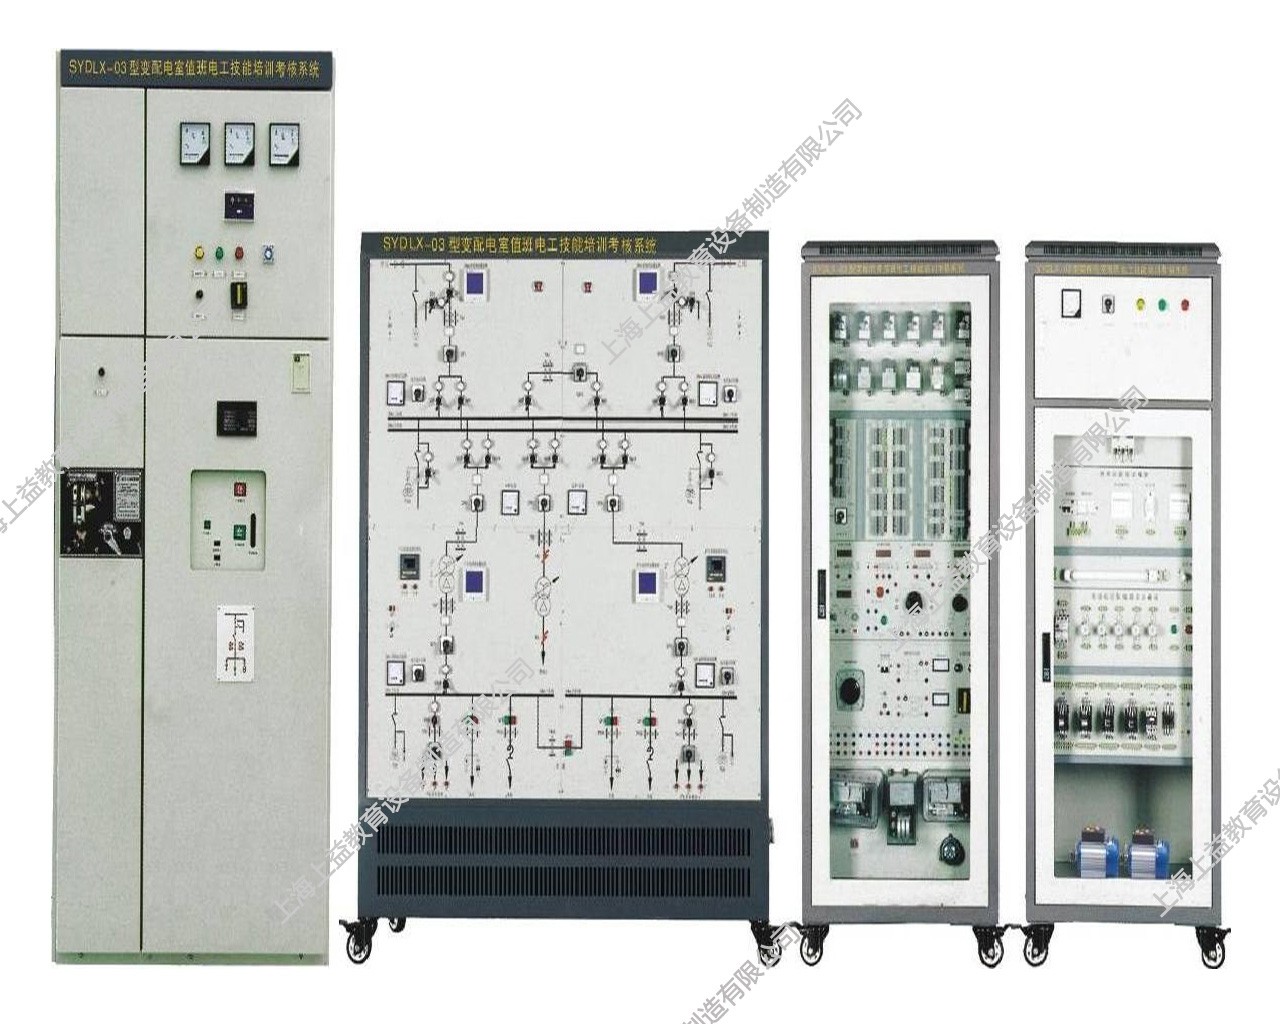 SYDLX-03變配電室值班電工技能培訓考核裝置